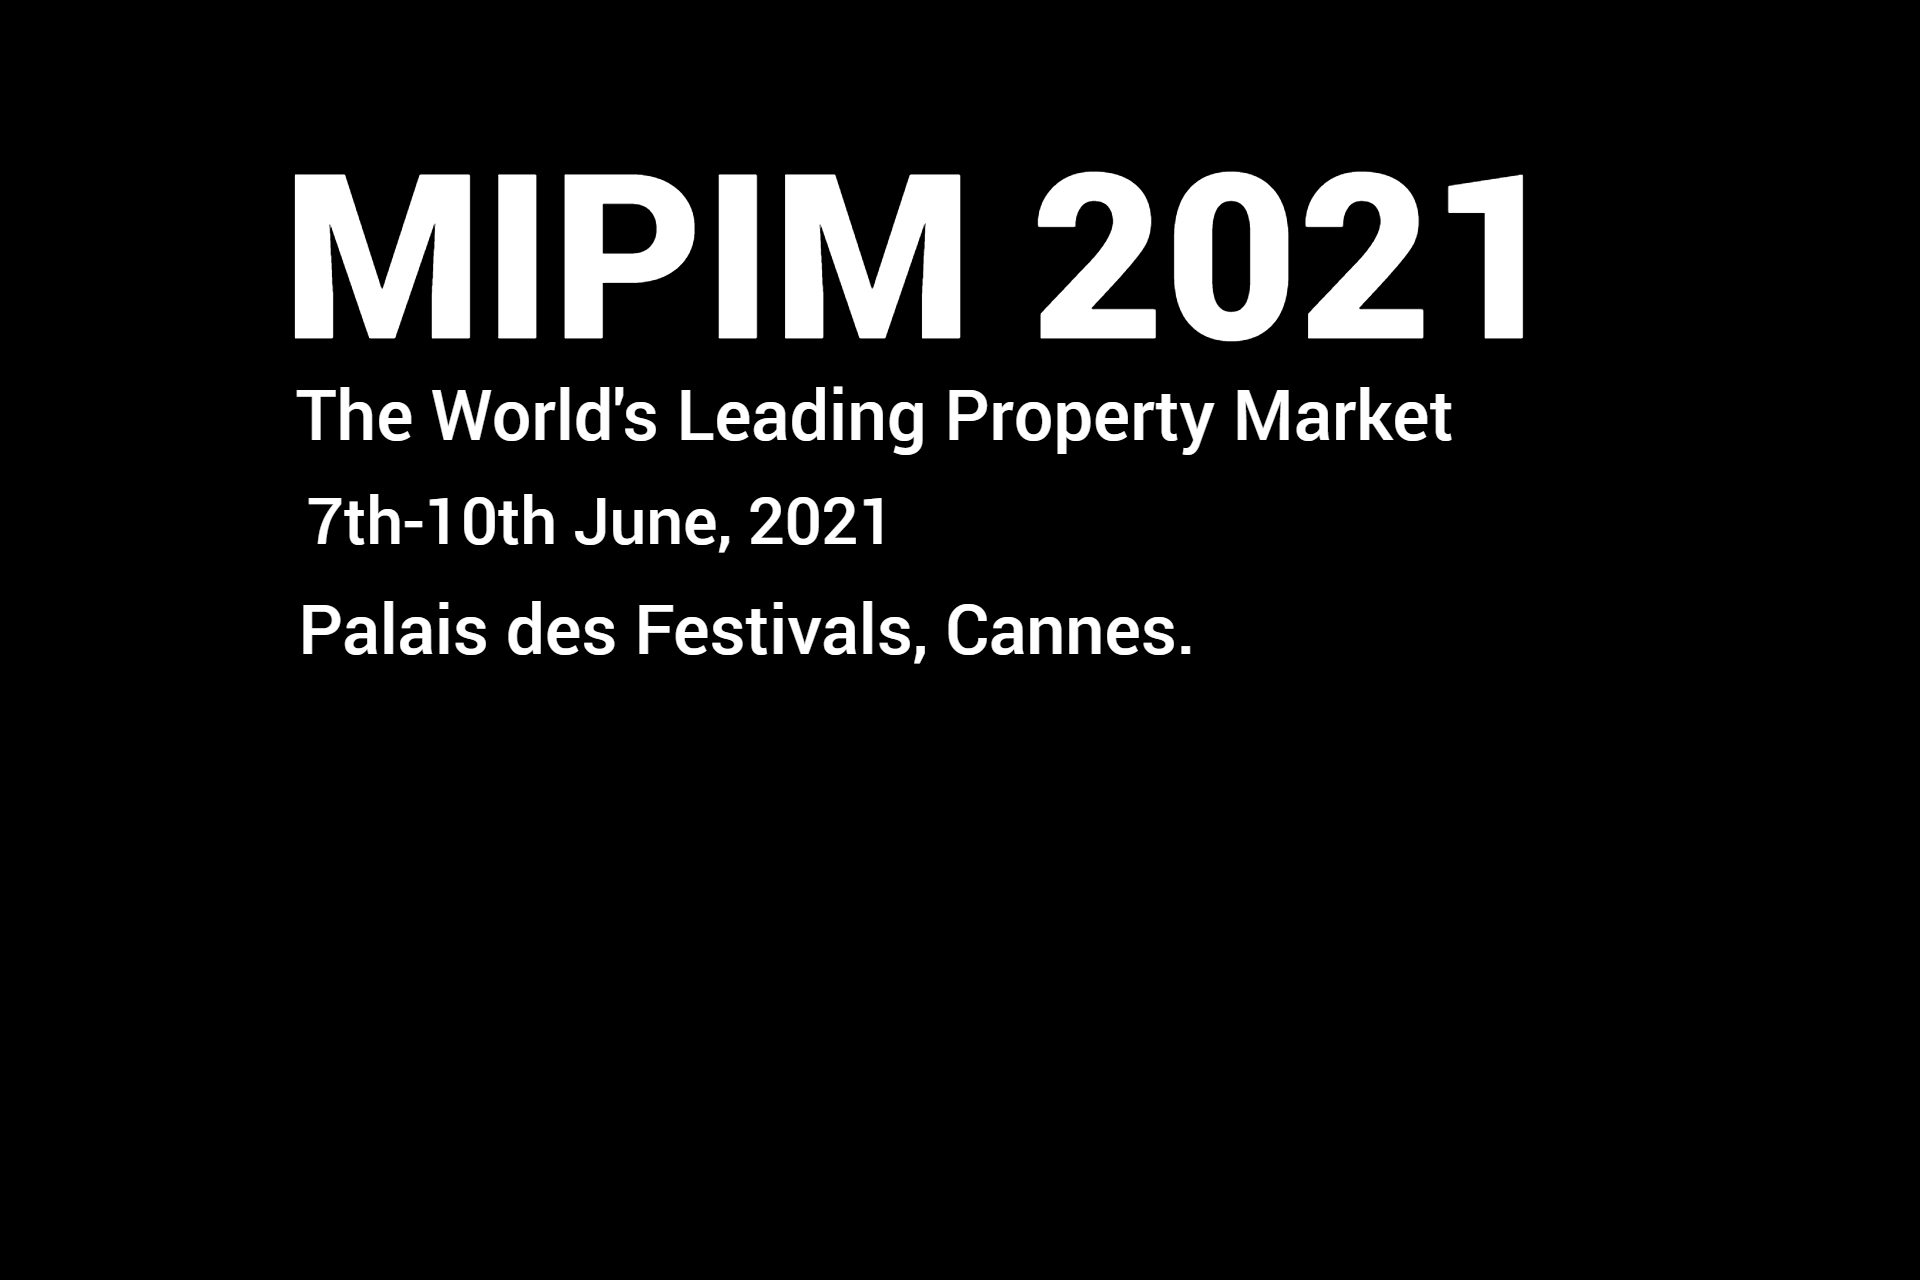 Cannes MIPIM 2021 Dates